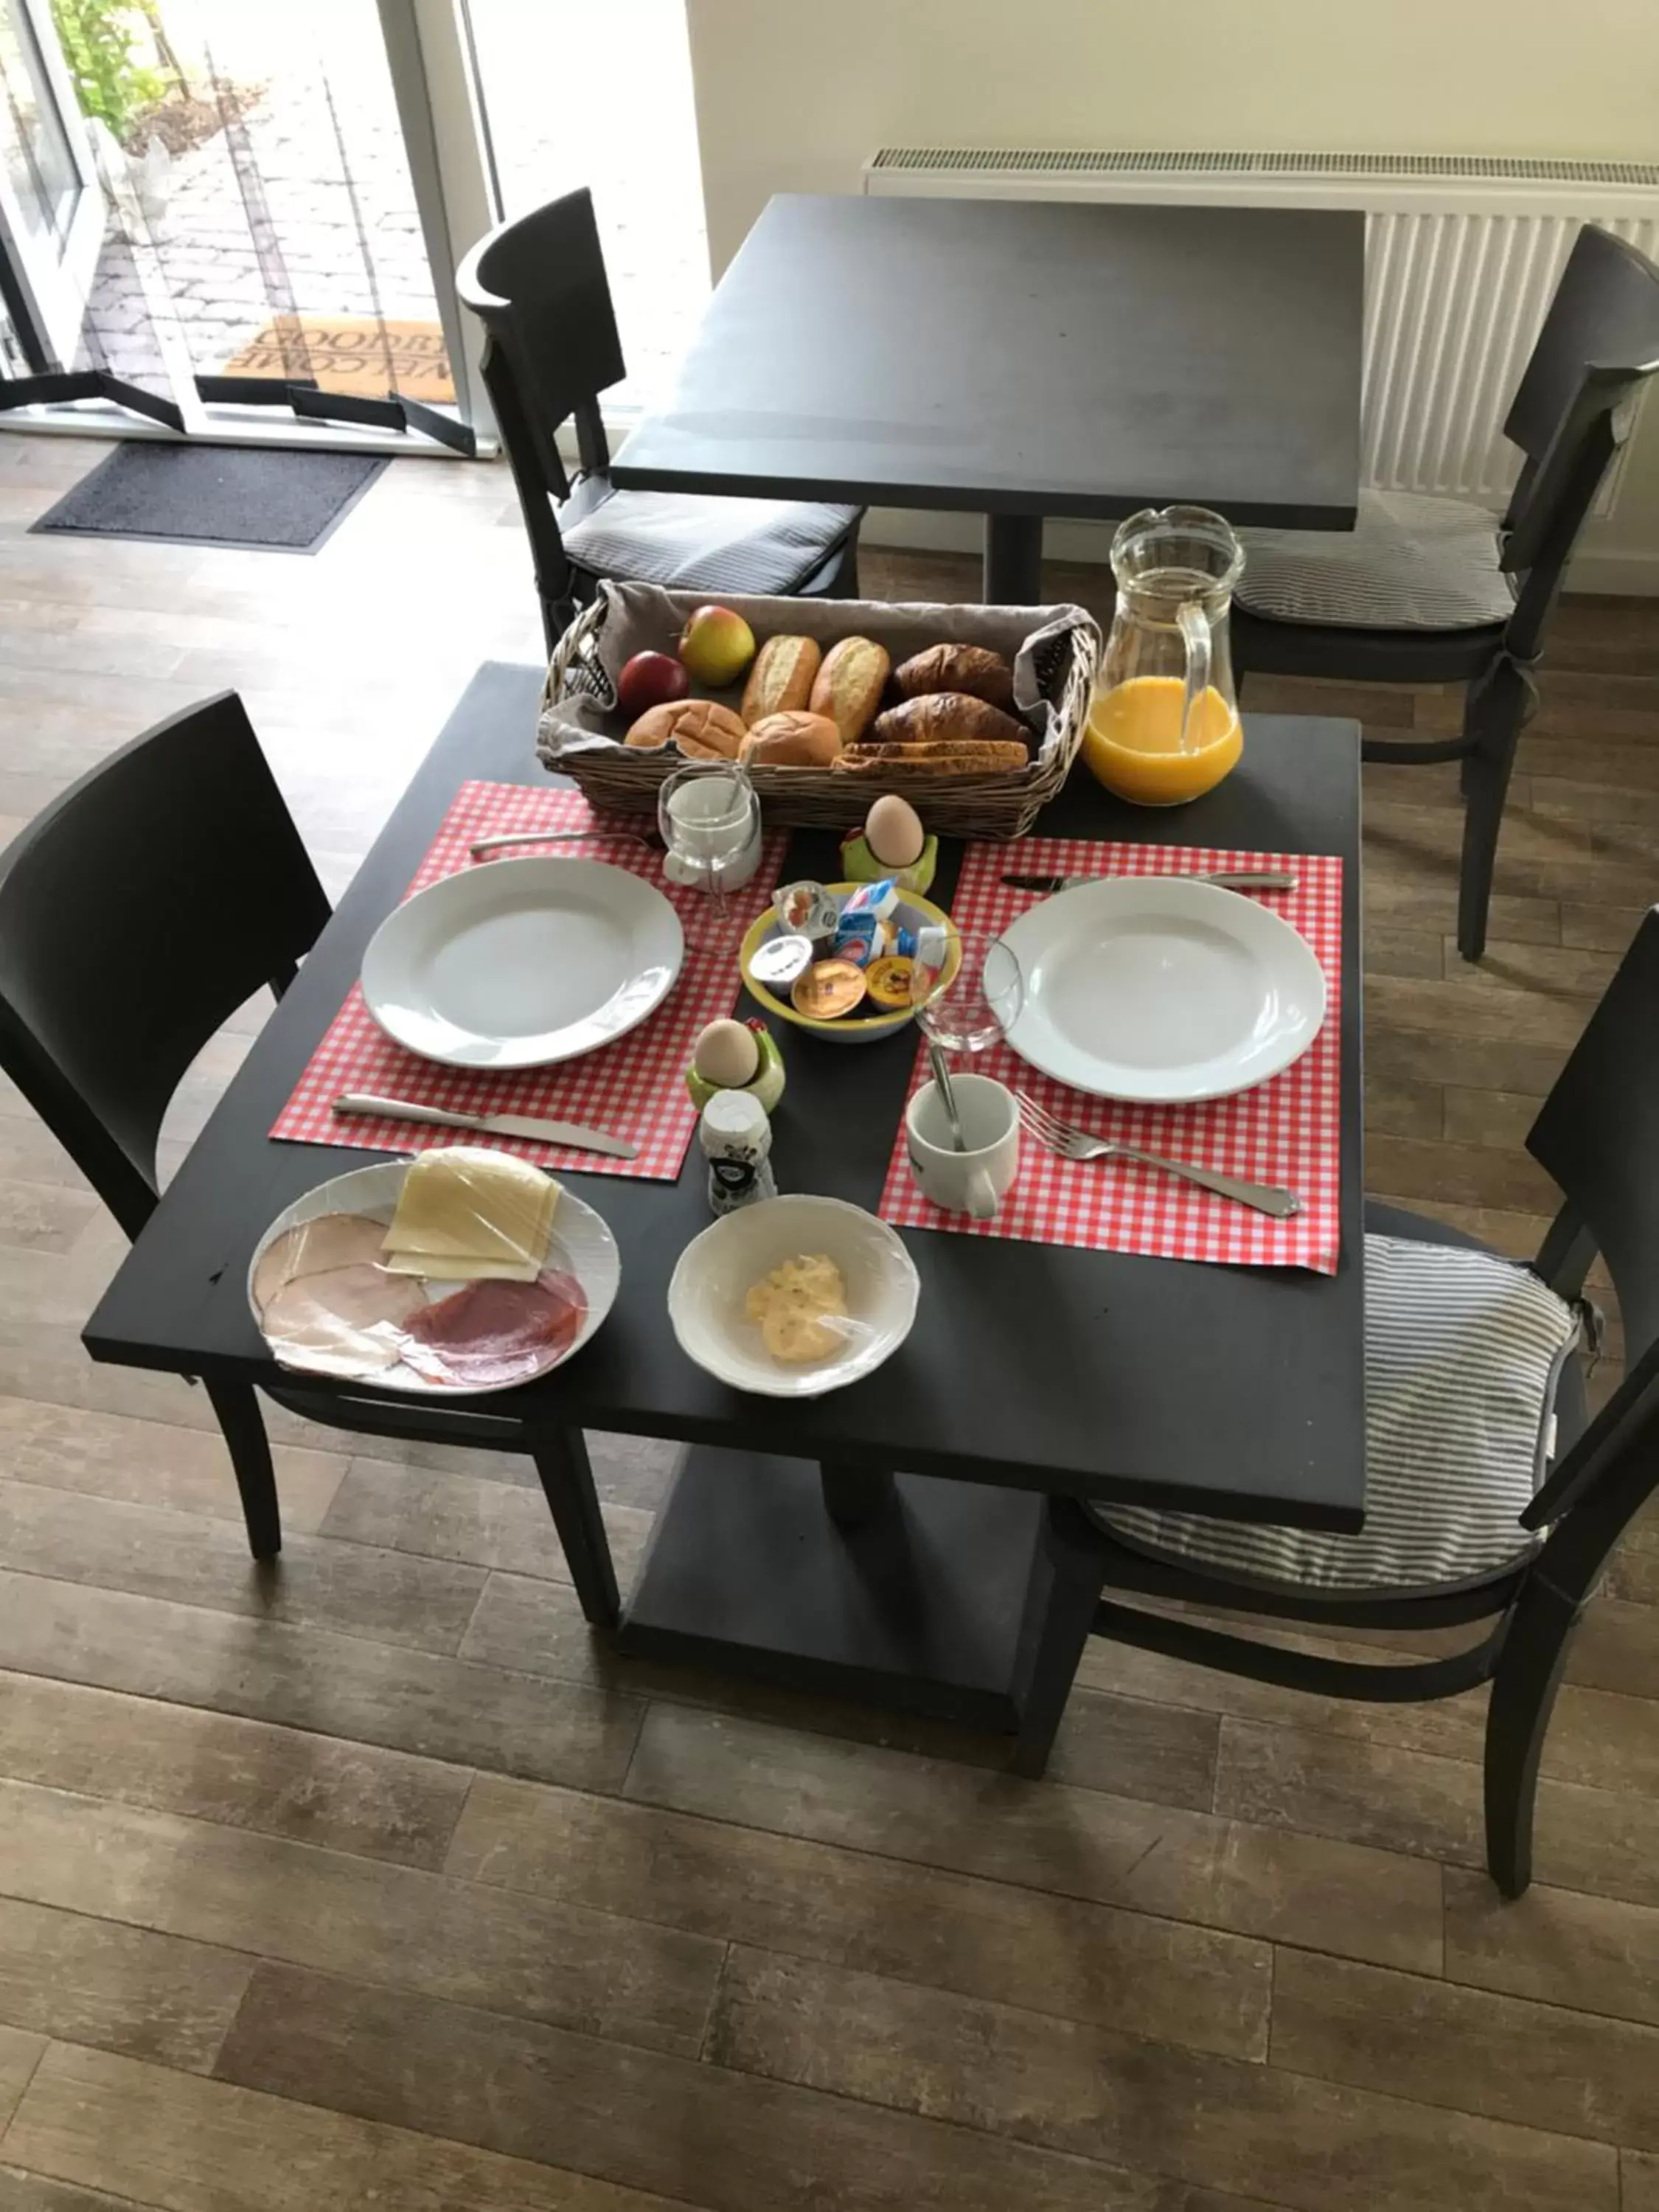 Breakfast in Herberg de Appelgaard